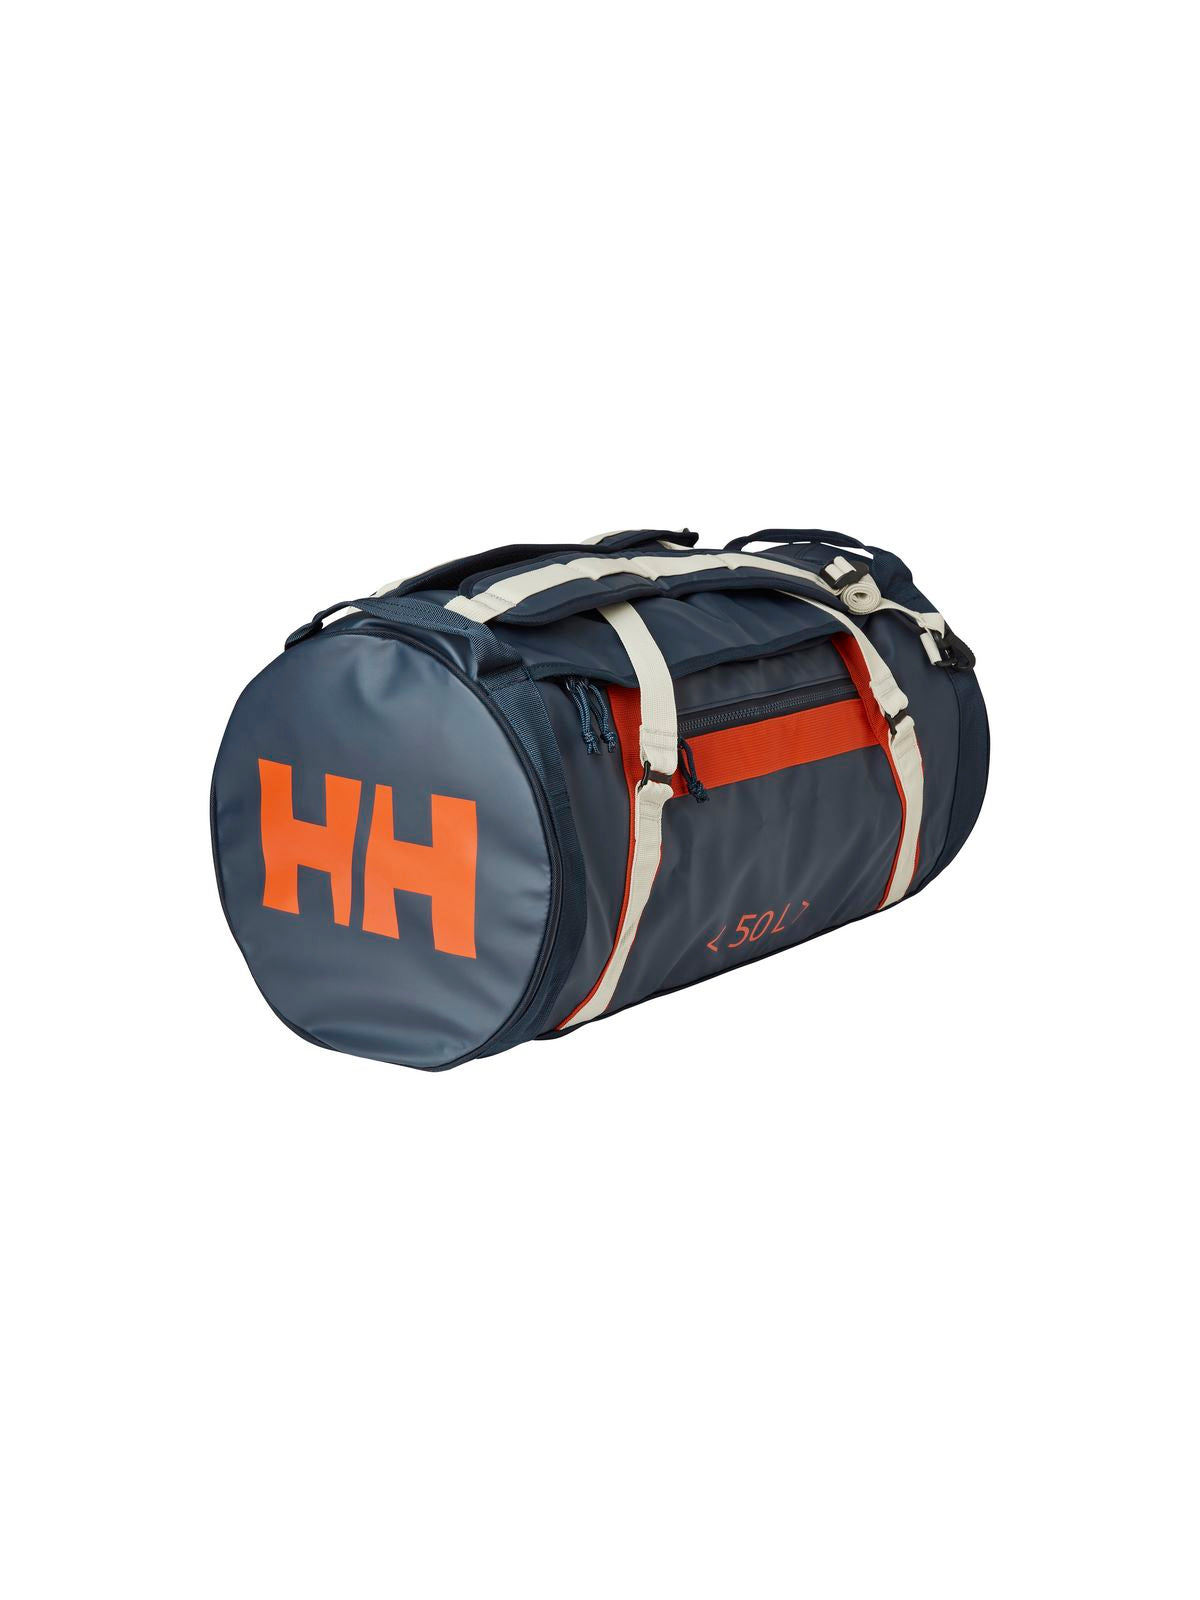 Torba Helly Hansen Hh Duffel Bag 2 50L - granatowy